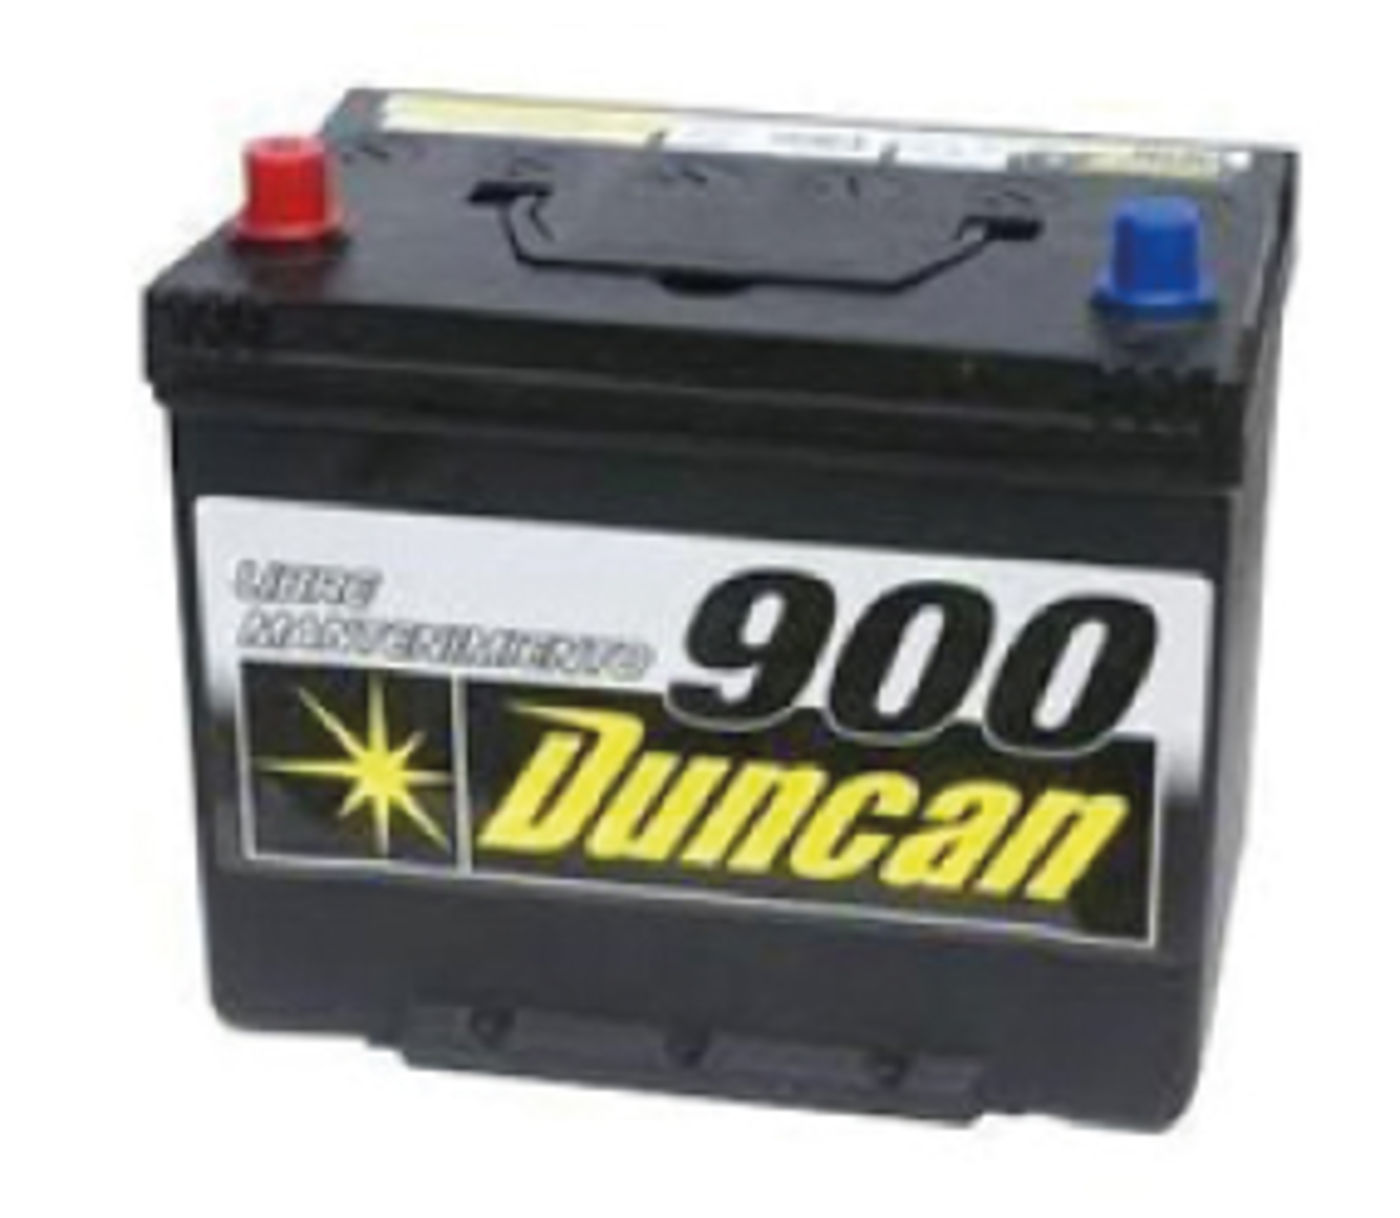 Duncan 22MR-800